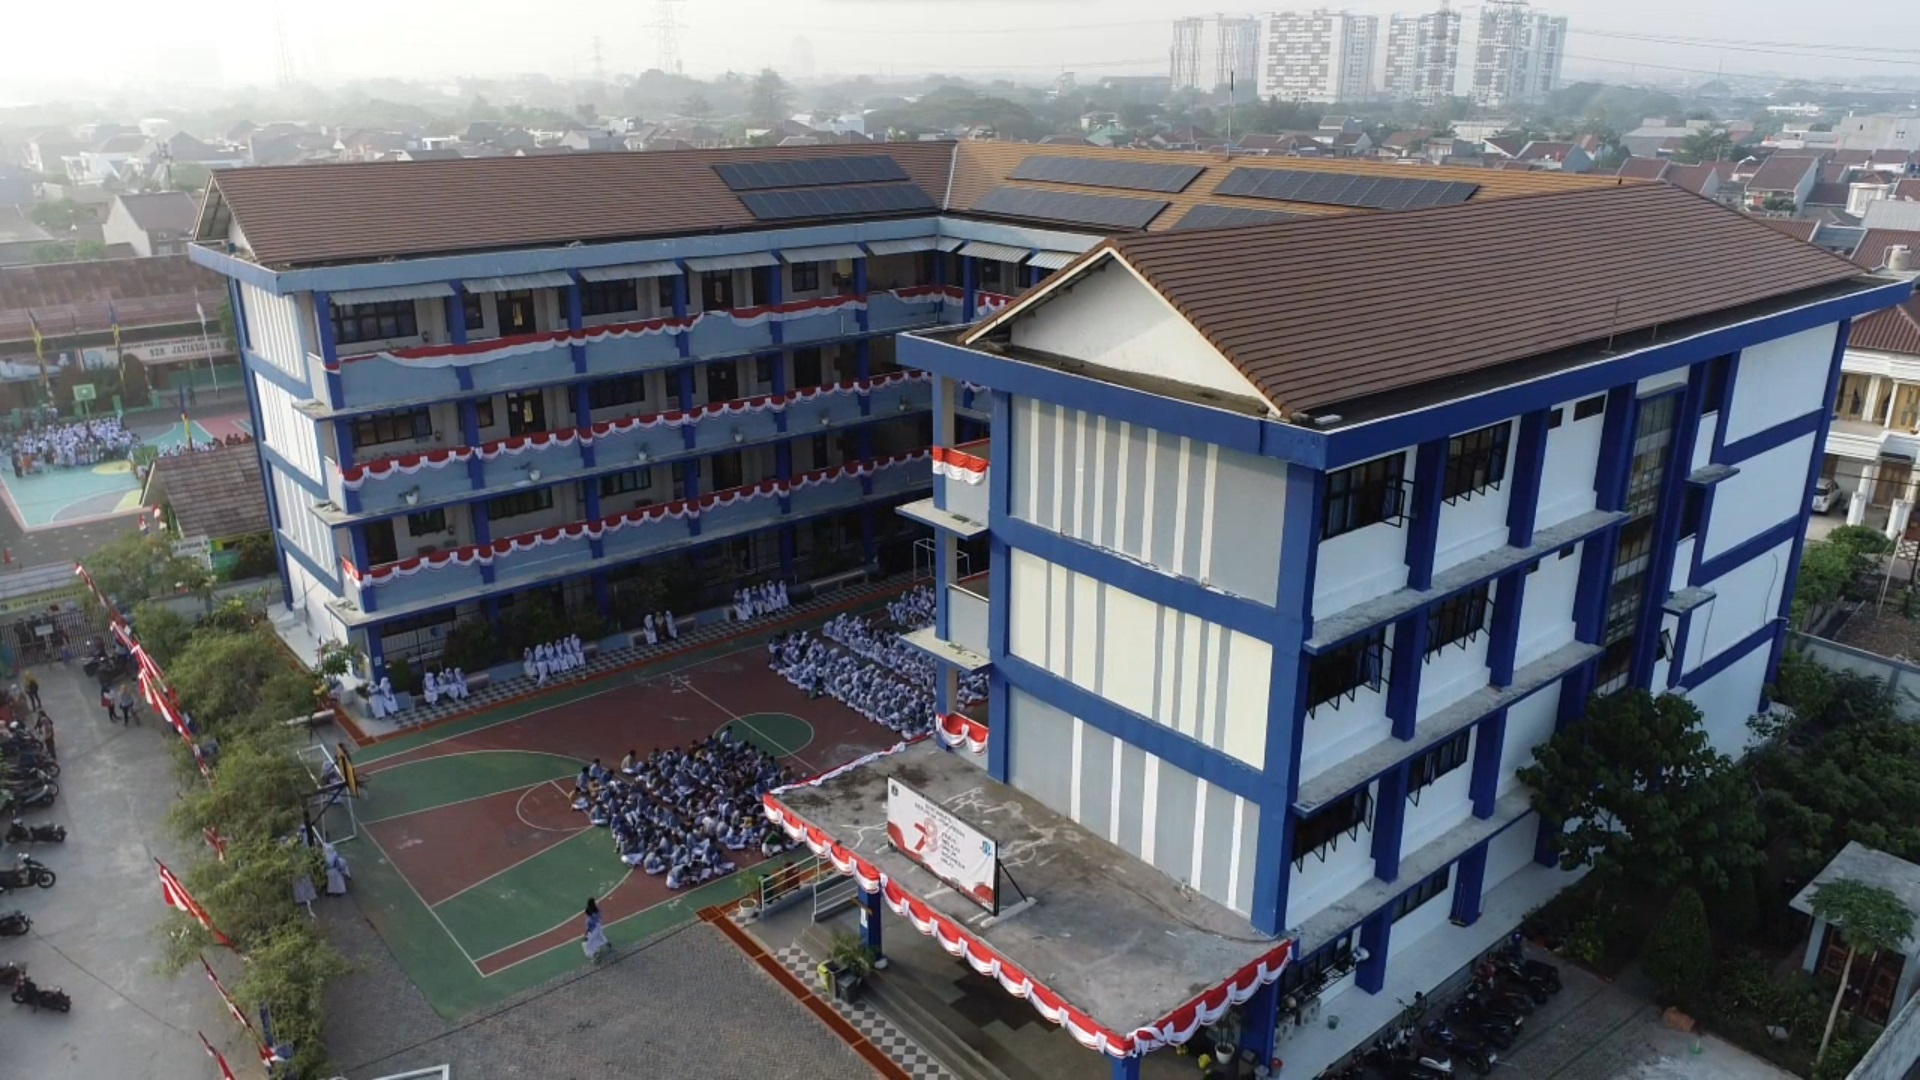 Sekolah Menengah Kejuruan Negeri 71 Jakarta: Membangun Masa Depan Melalui Pendidikan Berkualitas